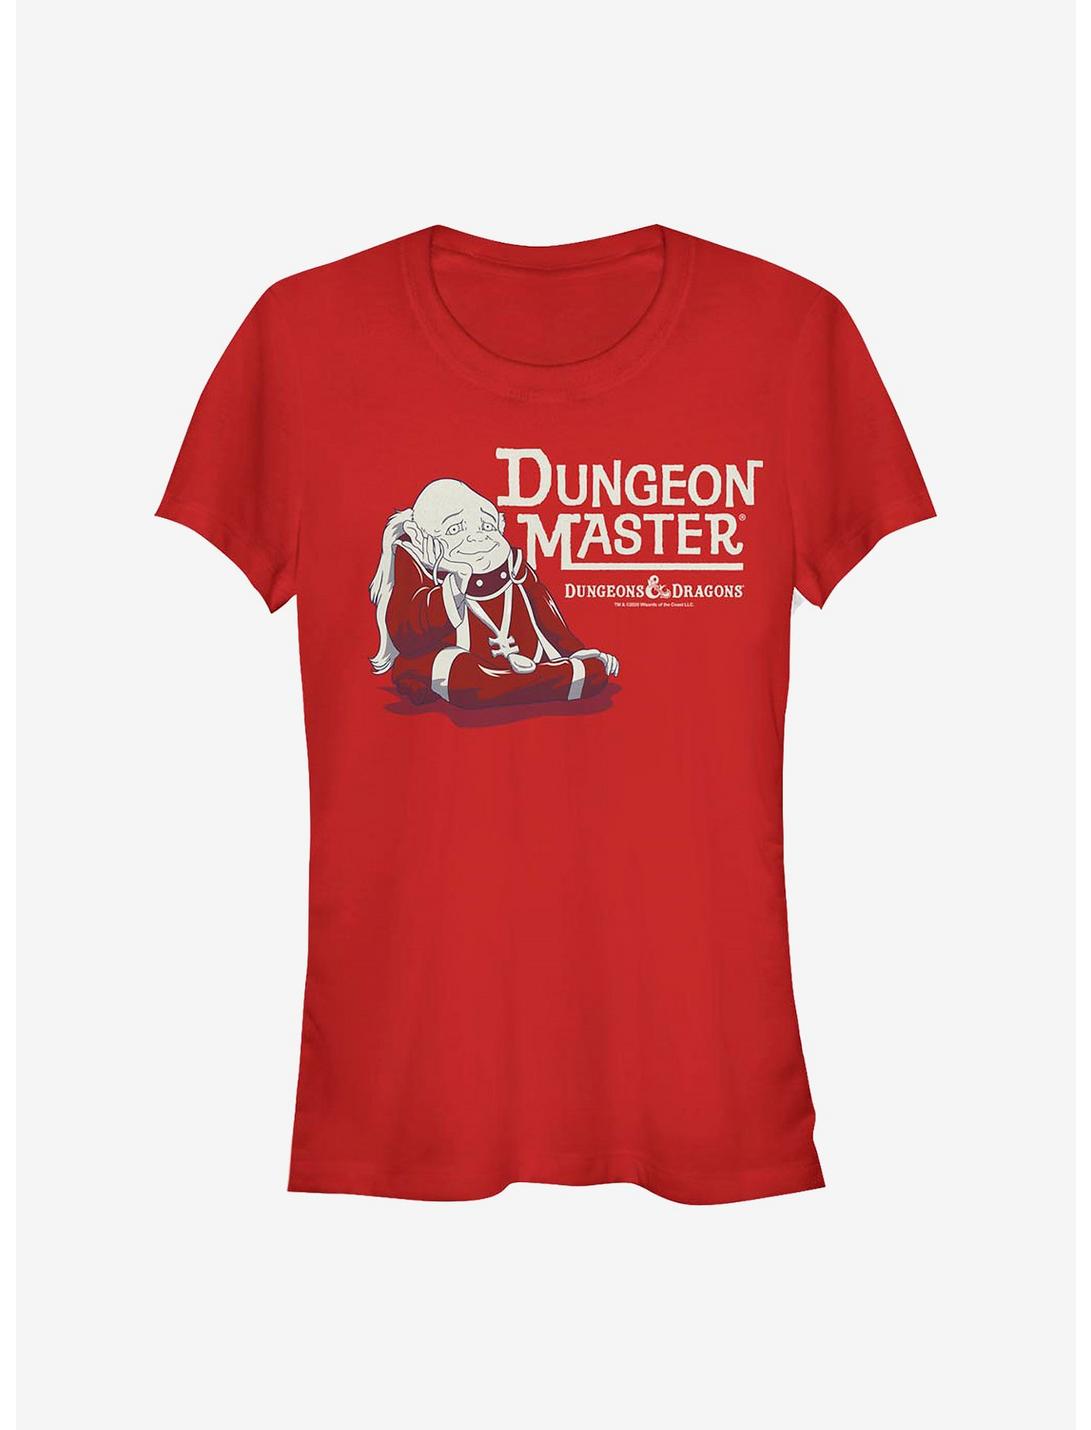 Dungeons & Dragons Dungeon Master Girls T-Shirt, RED, hi-res